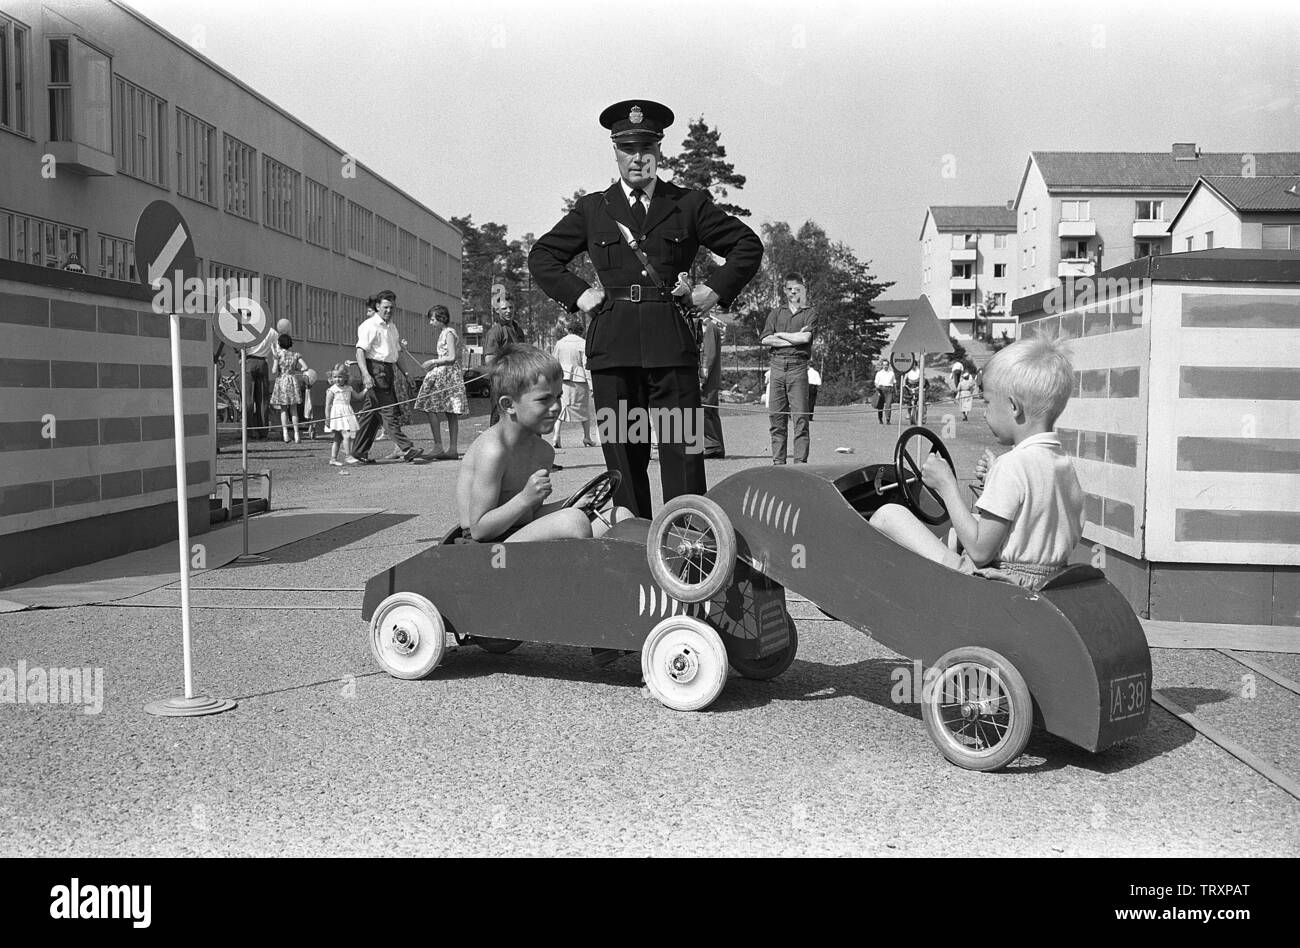 1950 policier. Deux garçons jouent dans leurs voitures à pédales et la police l'homme regarde alors qu'ils ont eu un petit accident. La Suède le 7 juin 1959 réf CV1 Banque D'Images